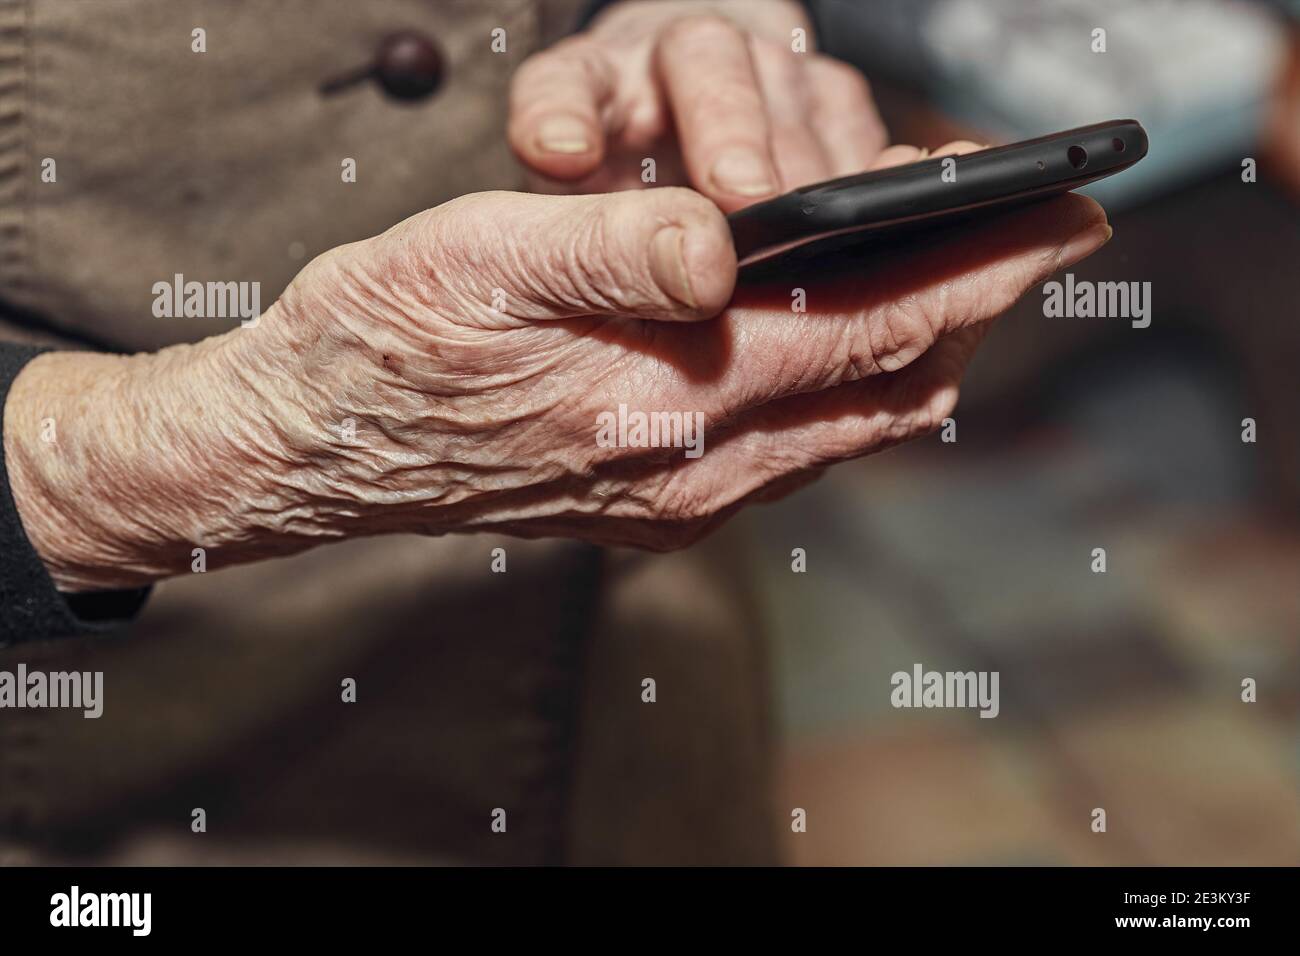 Las manos arrugadas de la anciana sostienen un teléfono móvil moderno Foto de stock